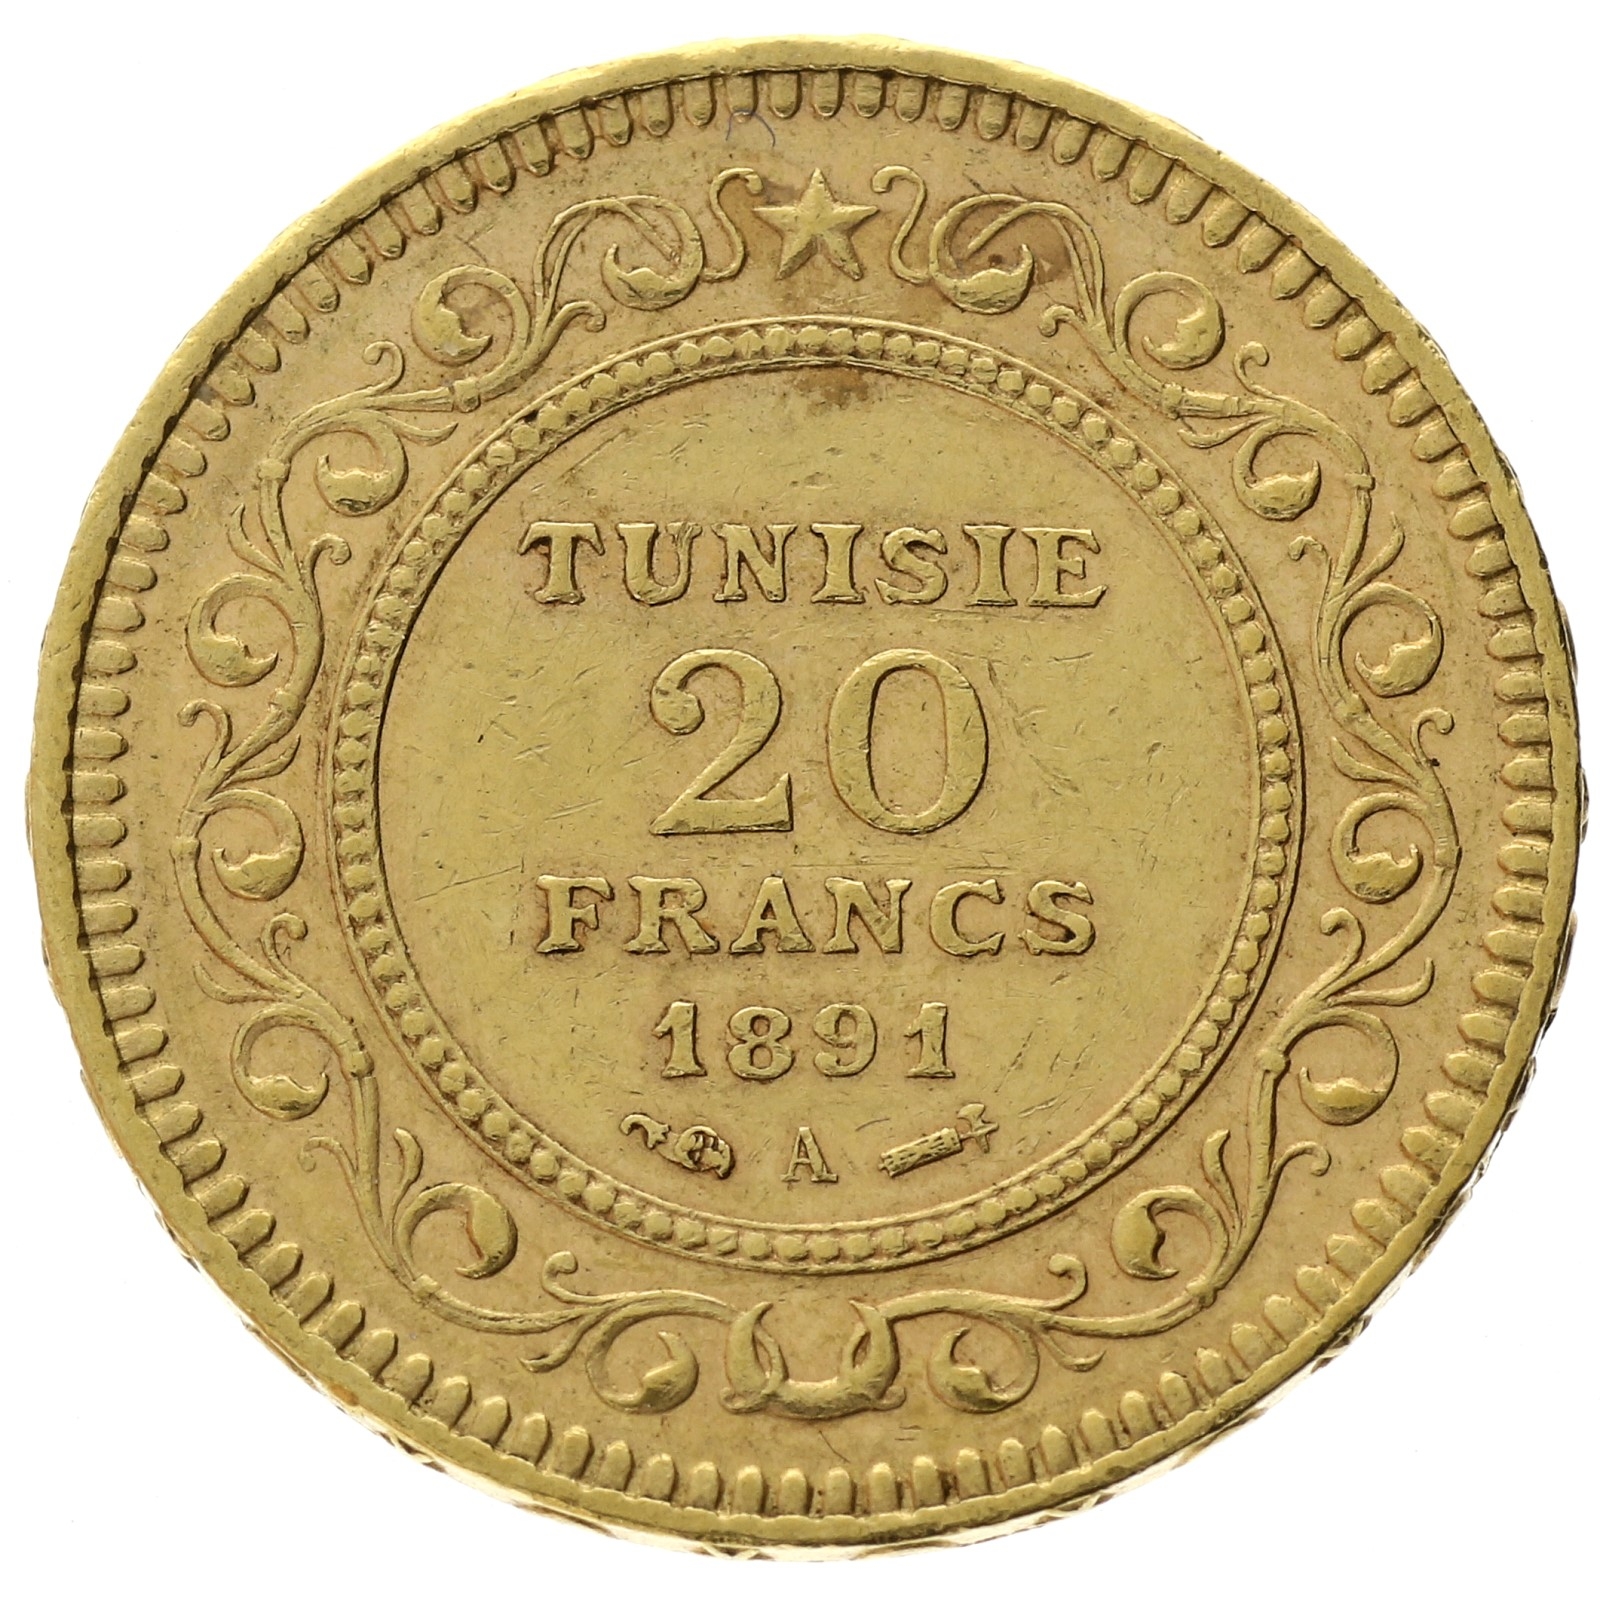 Tunisia - 20 francs - 1891 - Ali III